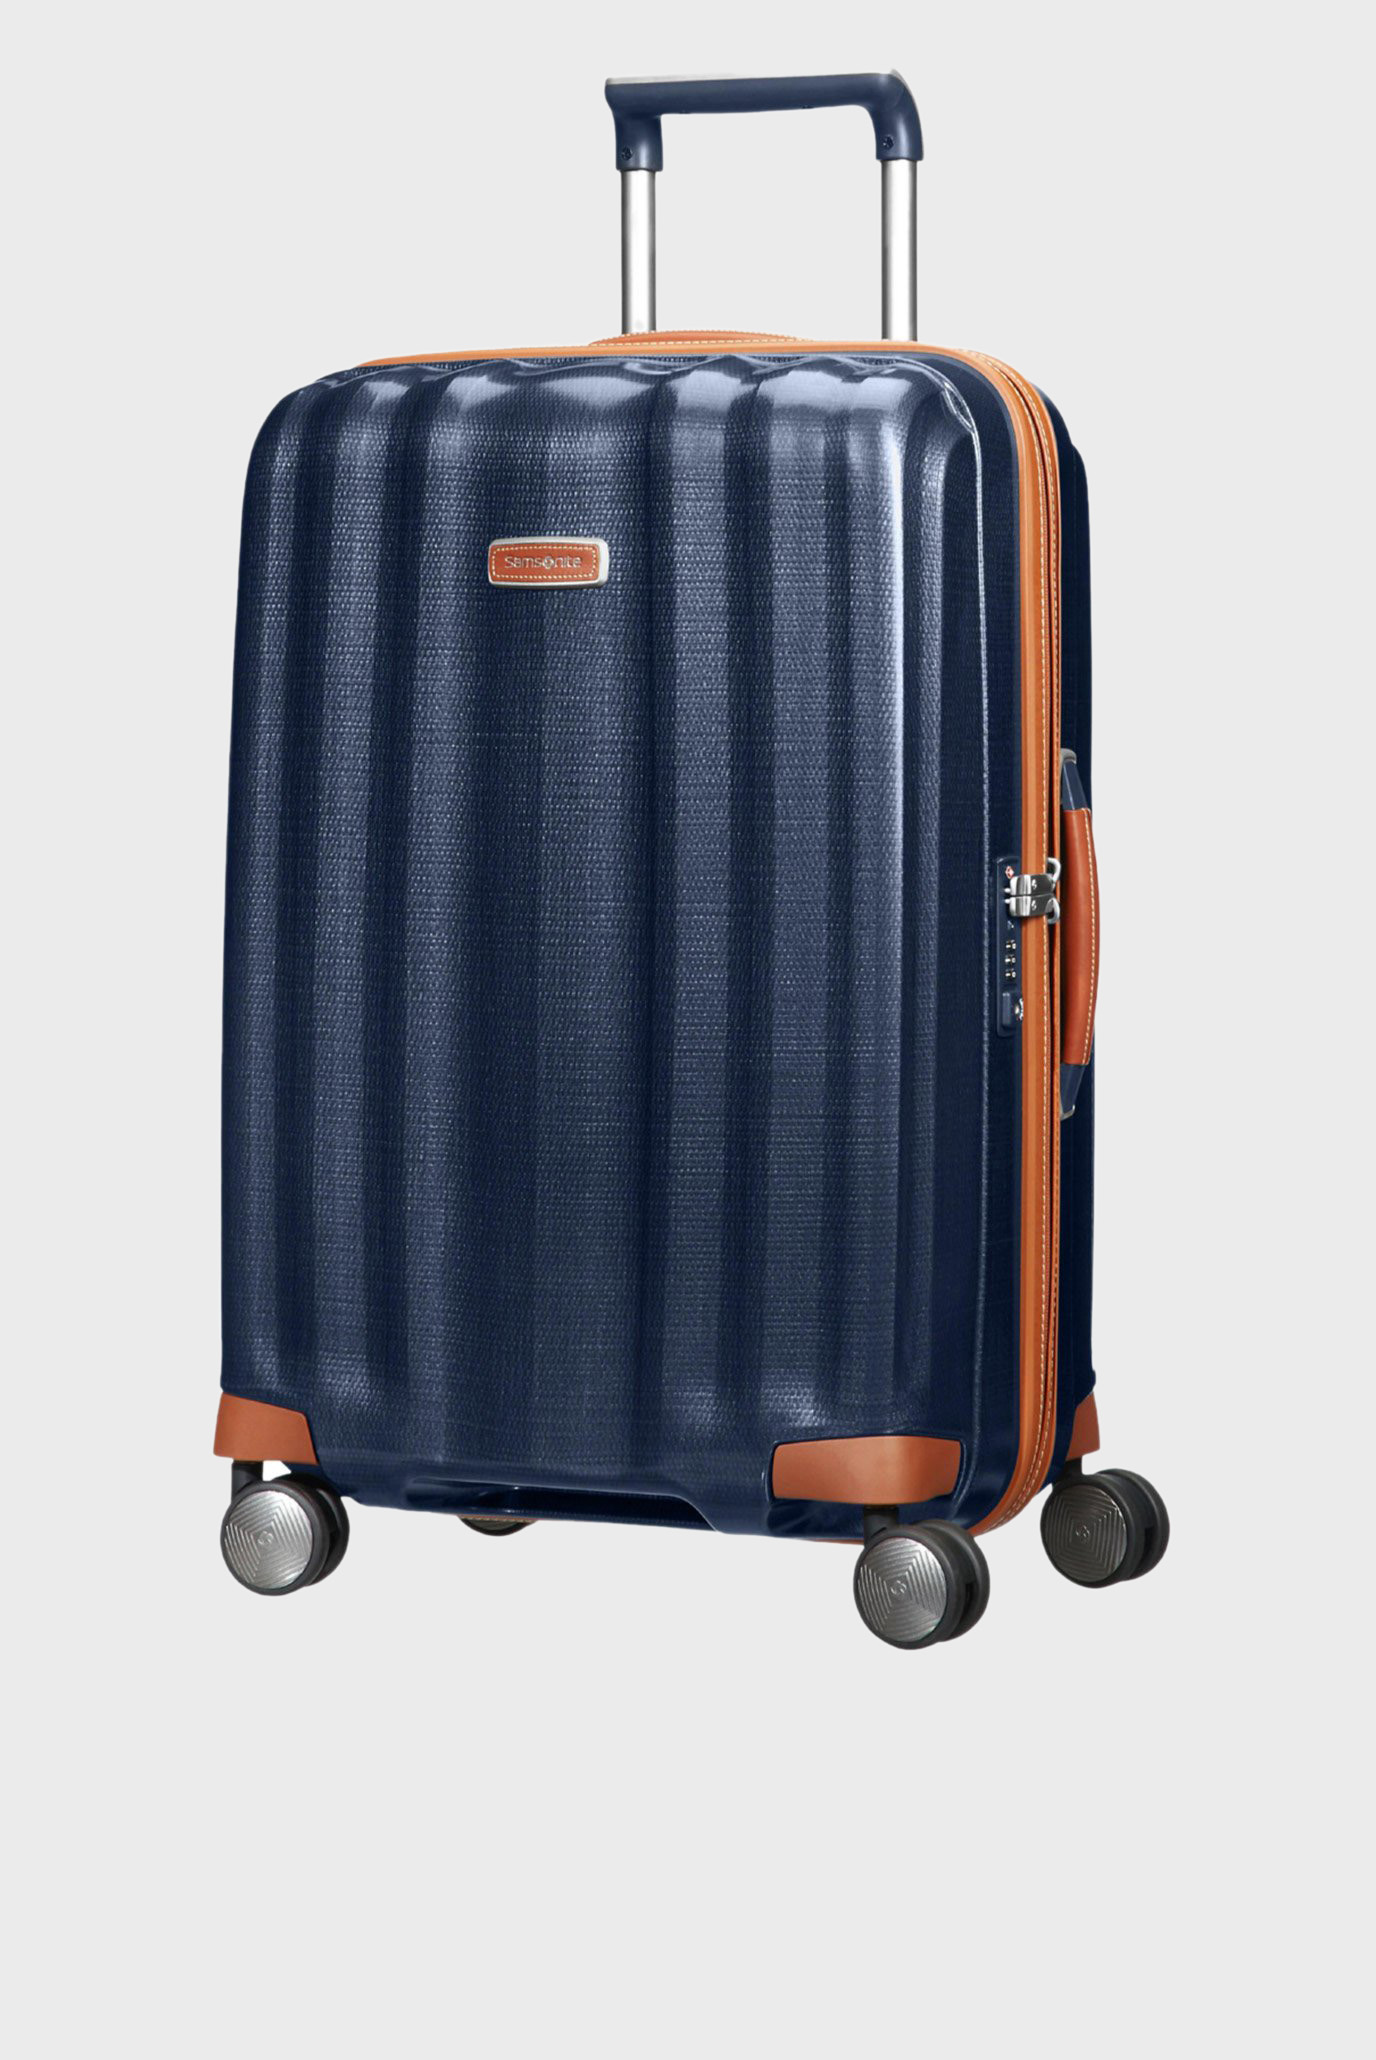 Голубой чемодан 68 см LITE-CUBE DLX MIDNIGHT BLUE 1